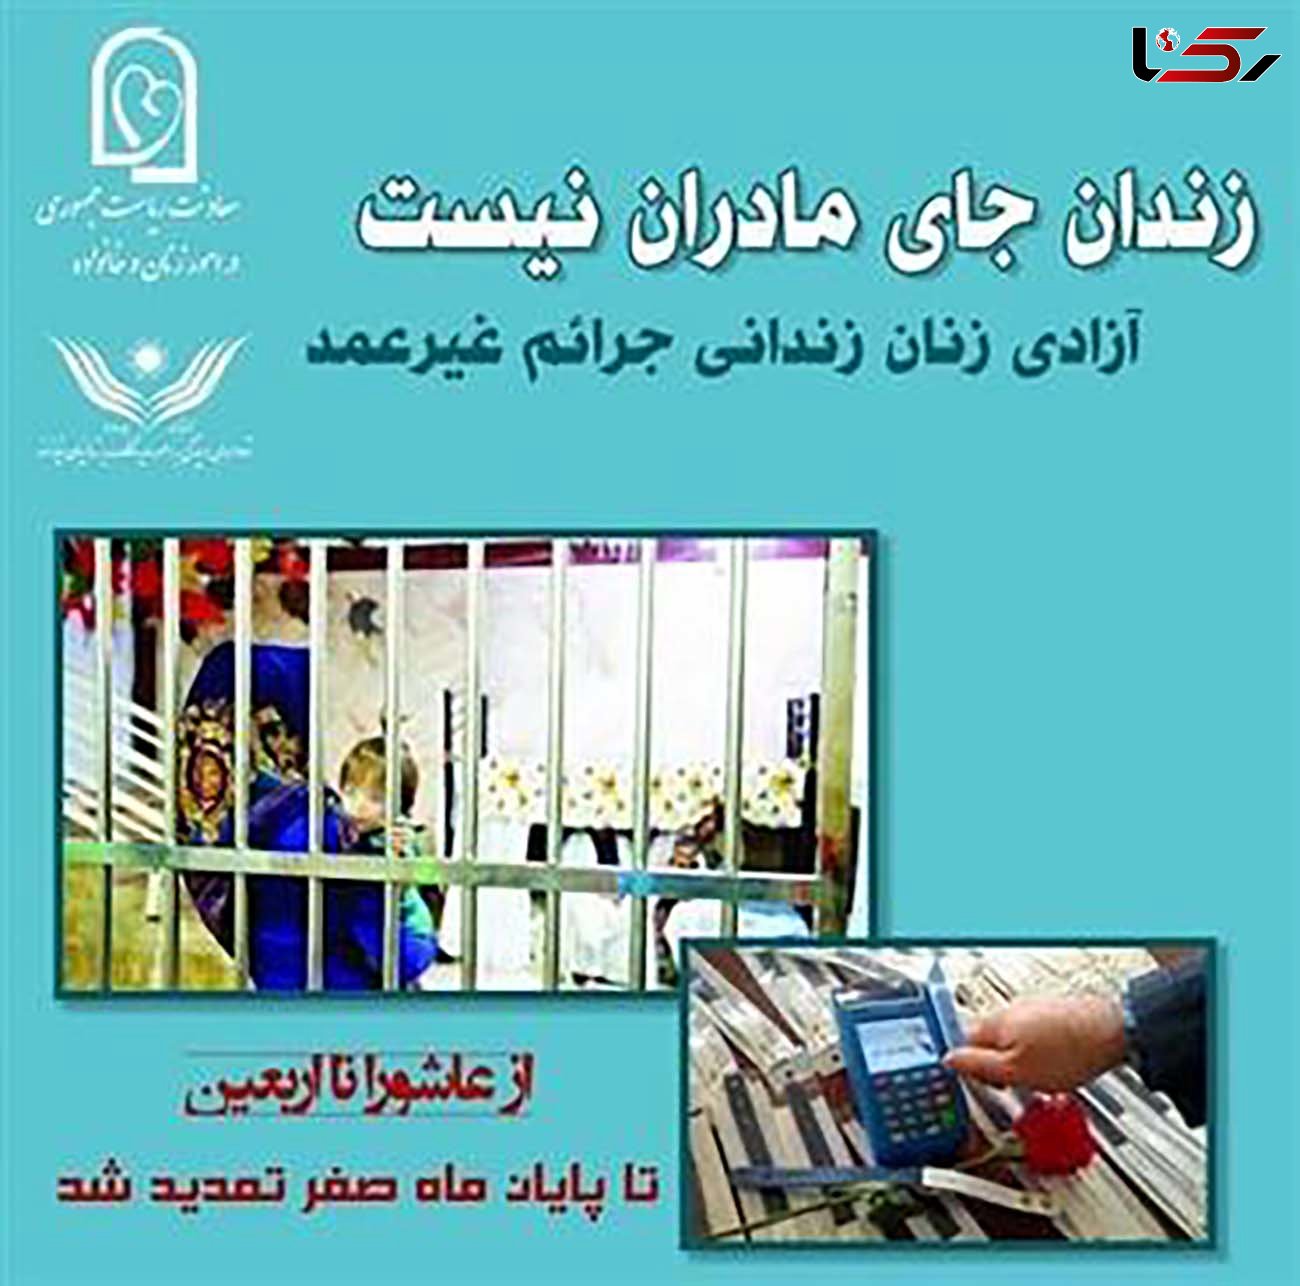  تمدید مشارکت در آزادسازی زنان زندانی جرائم غیرعمد/ تا شنبه ۲۶ مهر ماه و پایان ماه صفر